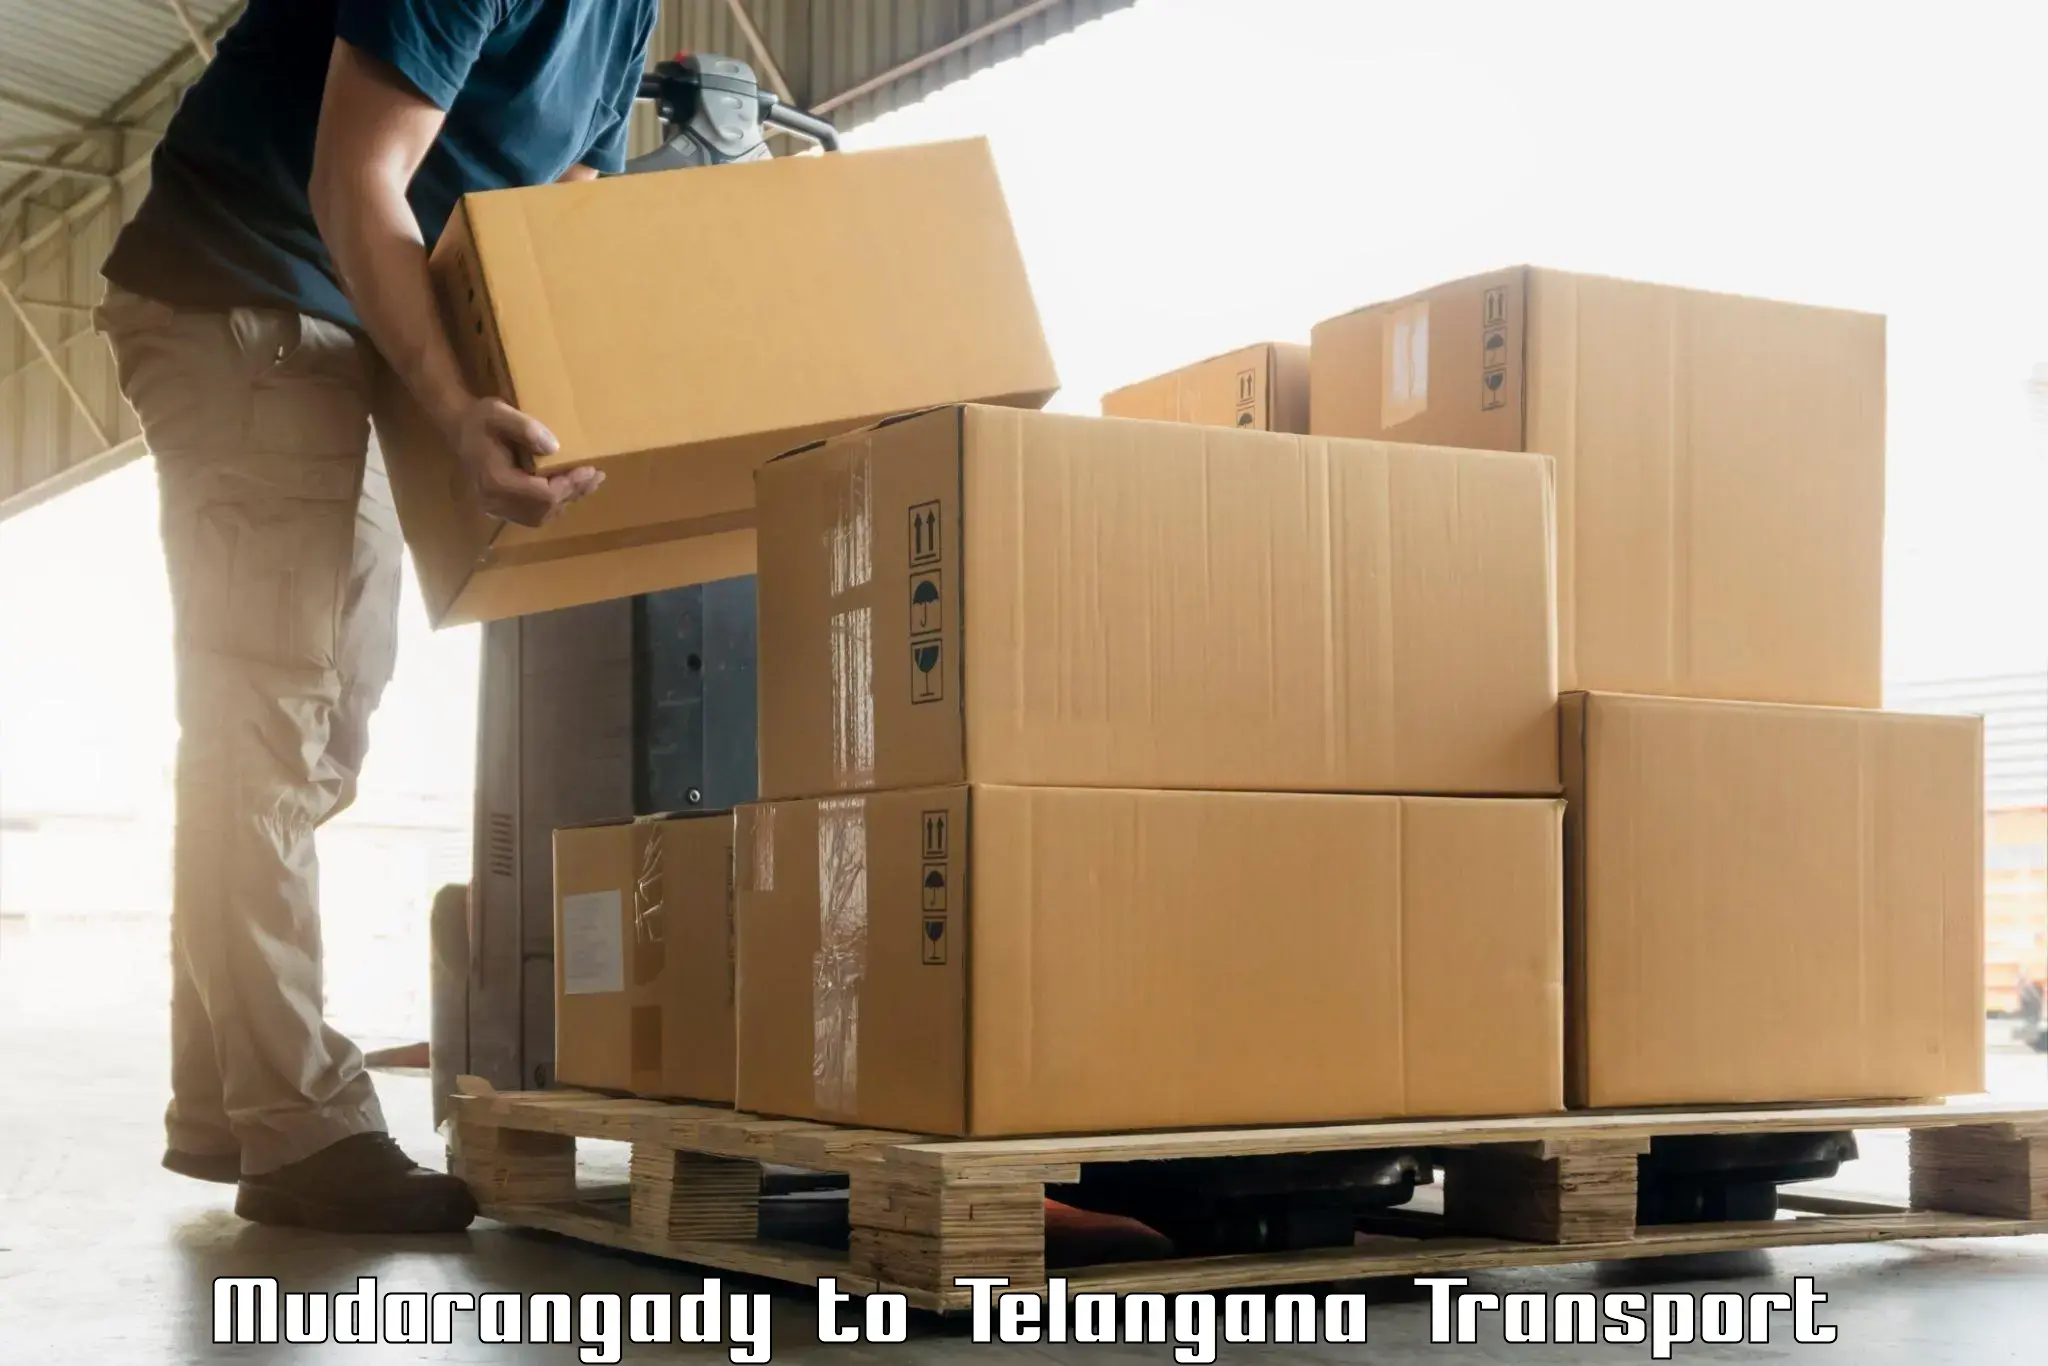 Intercity goods transport in Mudarangady to Kothakota